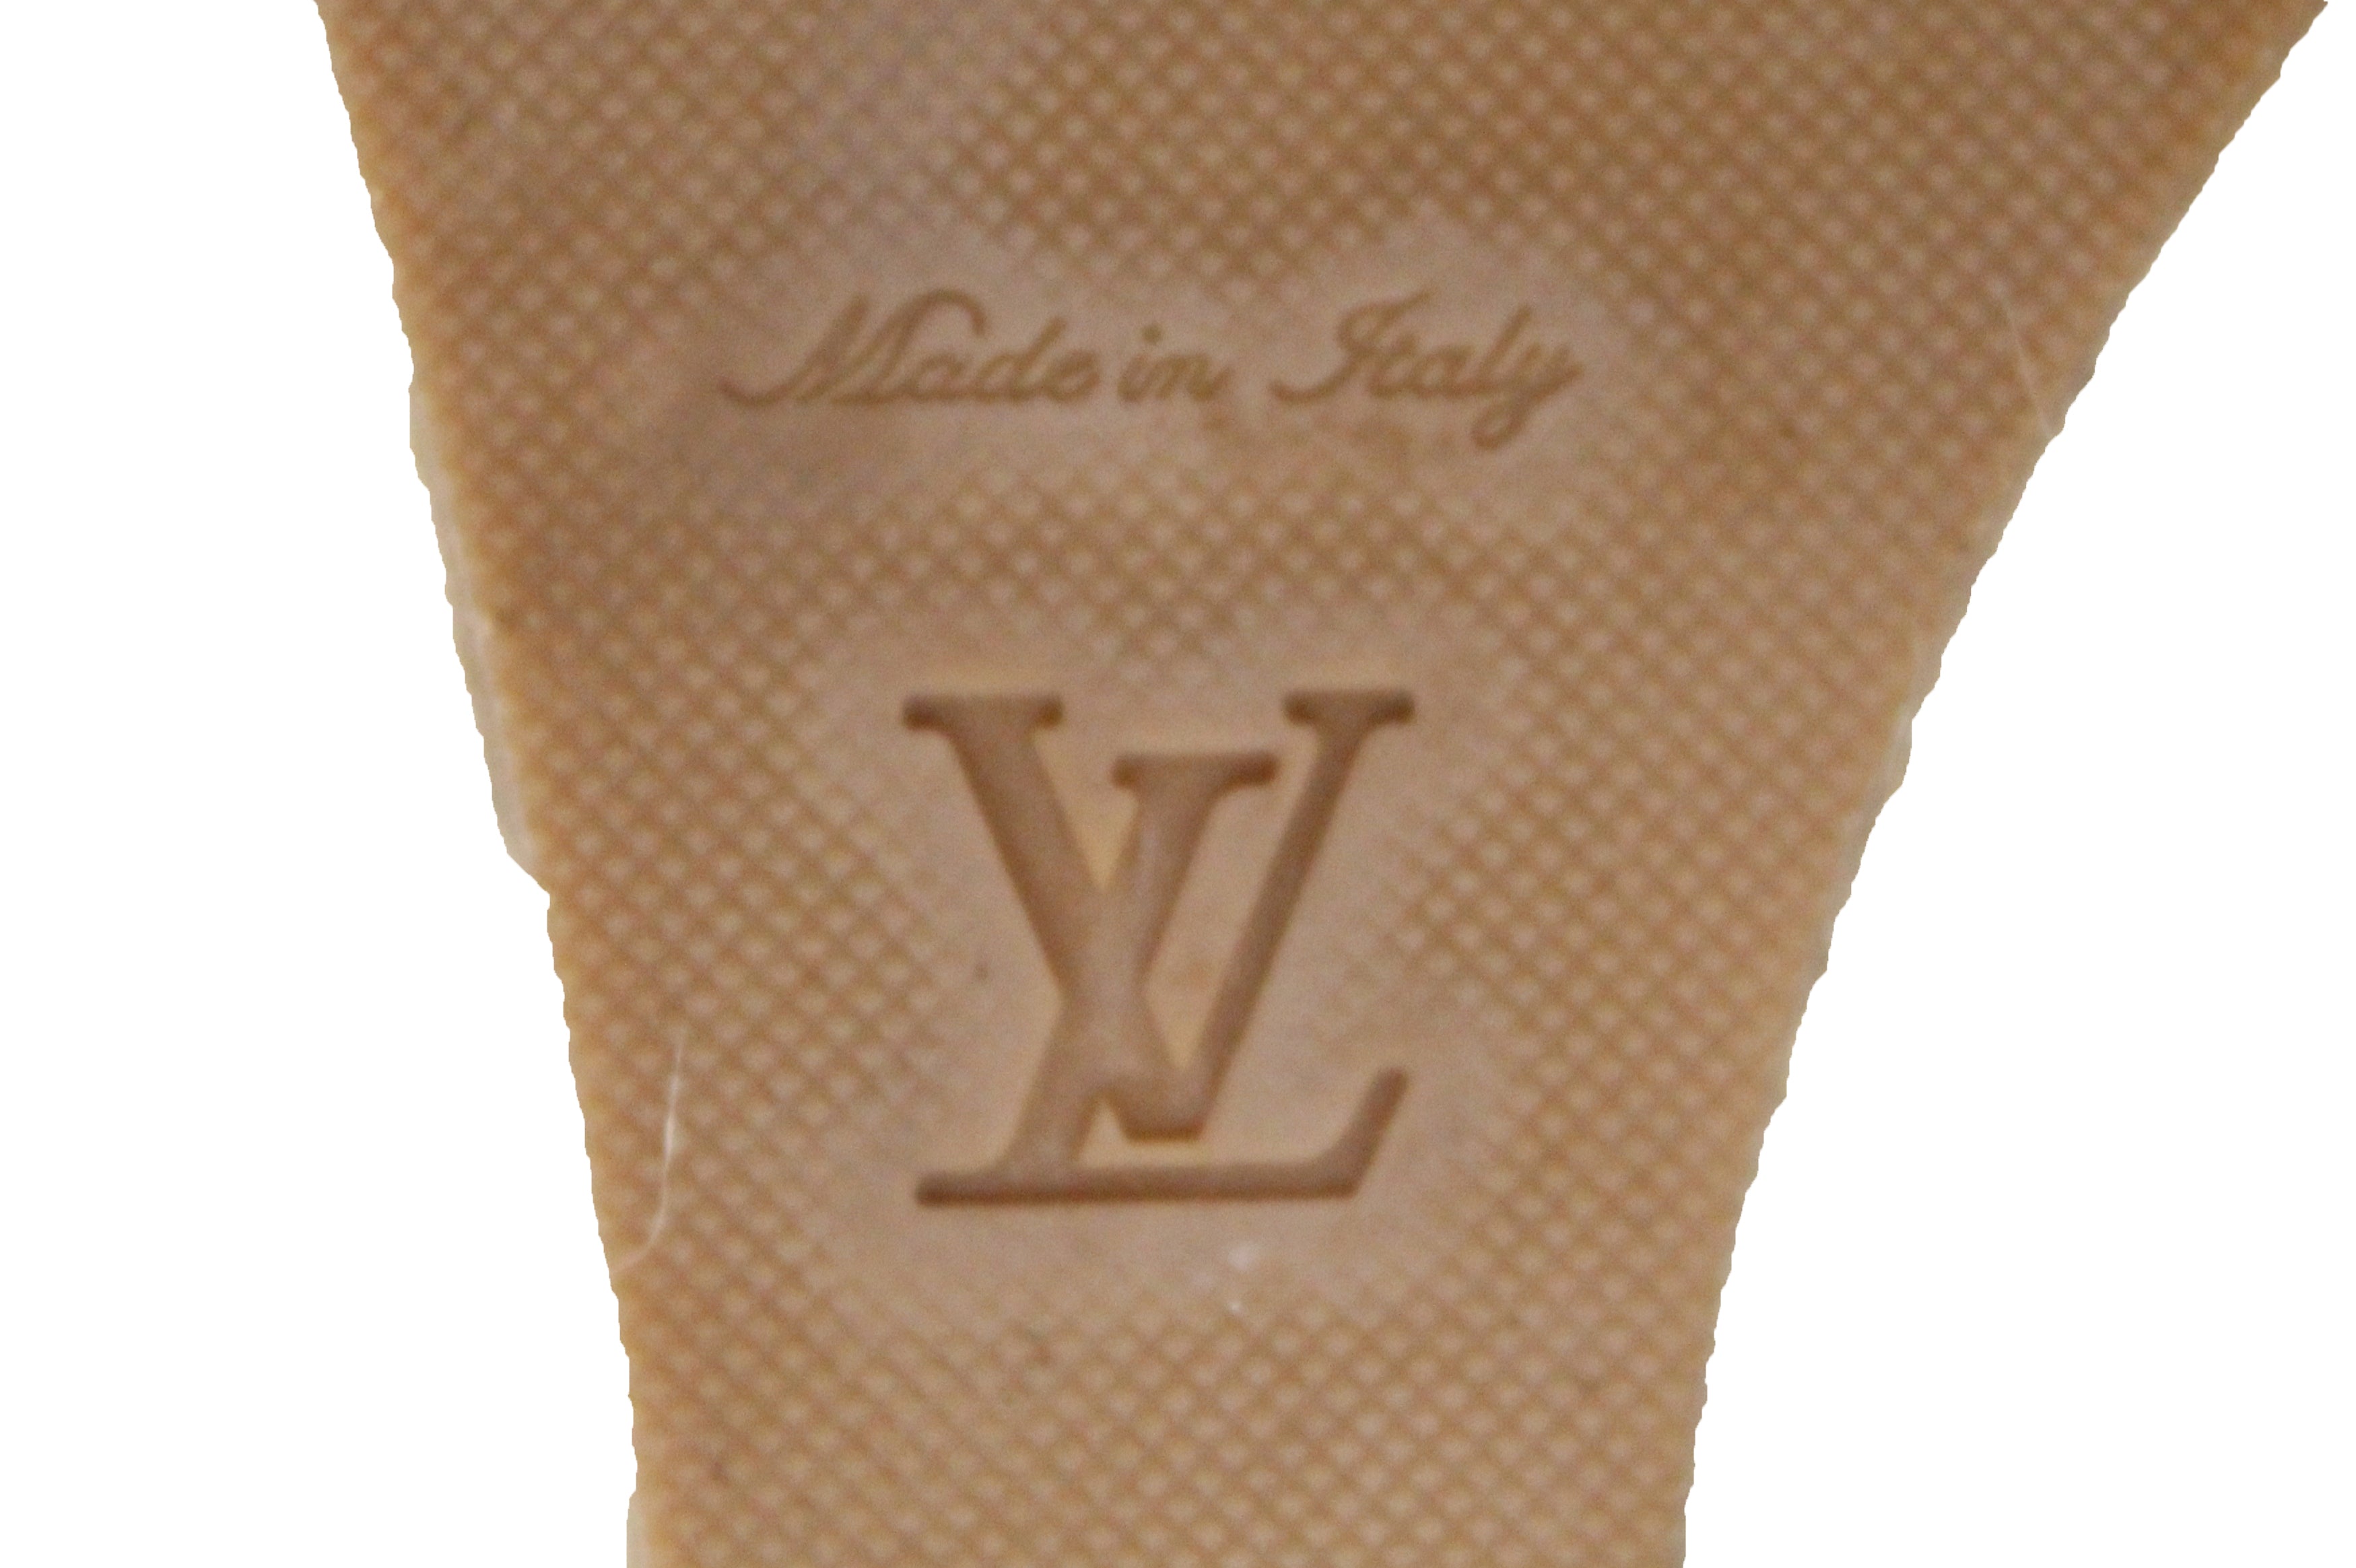 Louis Vuitton Women's Starboard Wedge Sandals Damier White 2383801